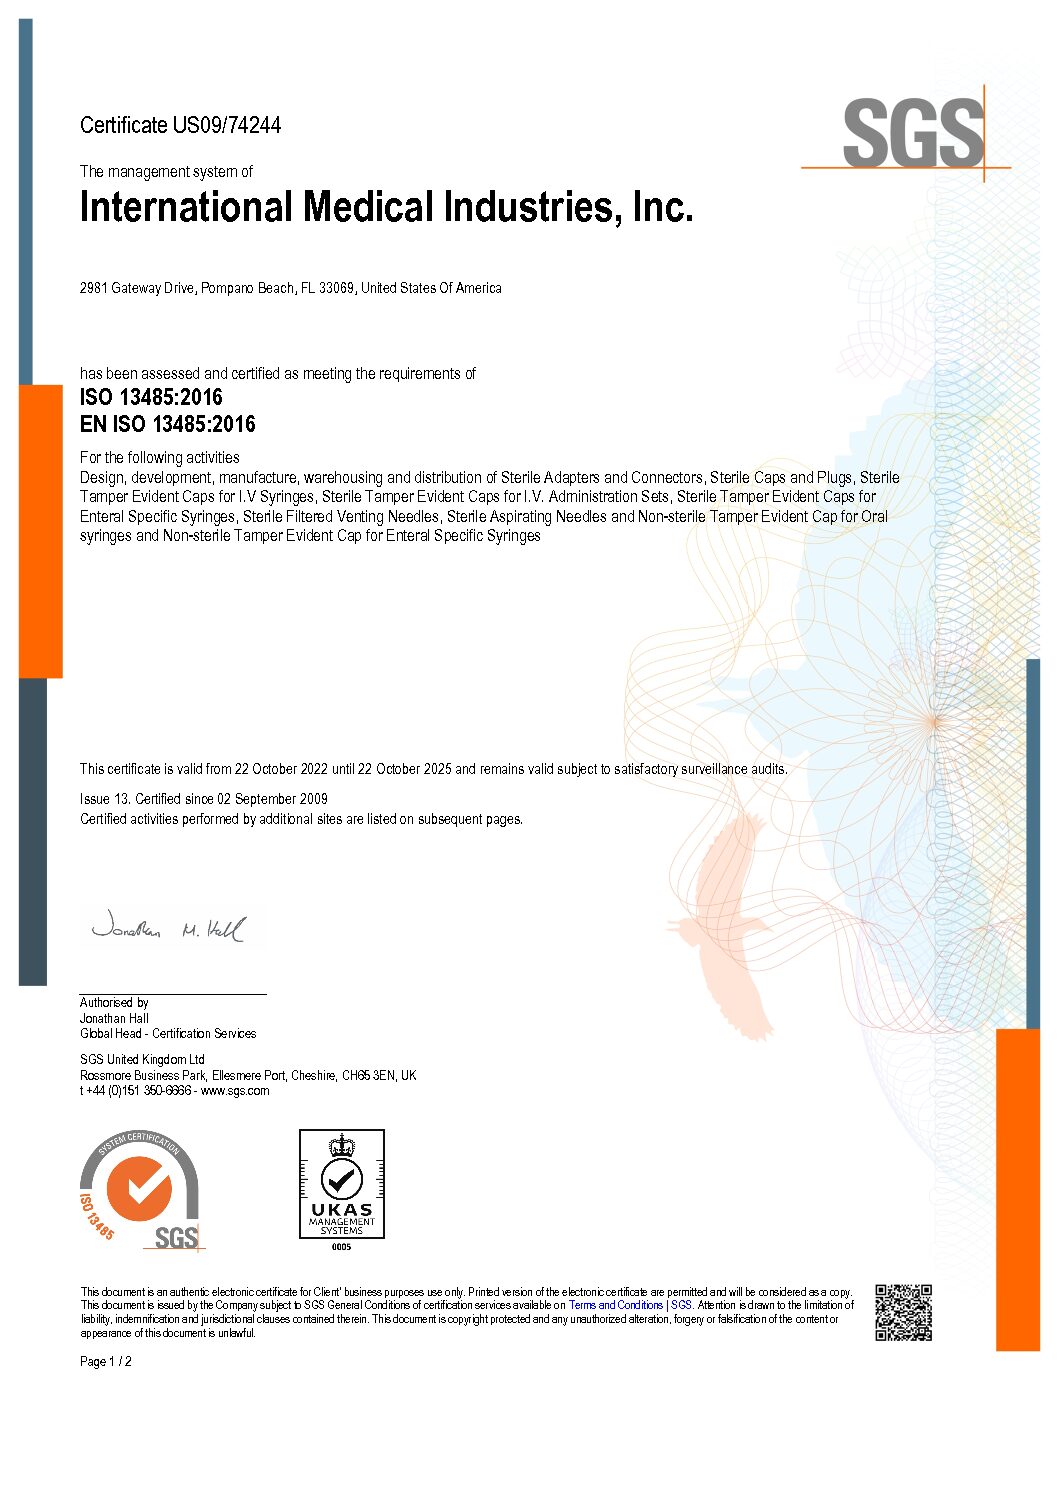 IMI MDSAP Certification